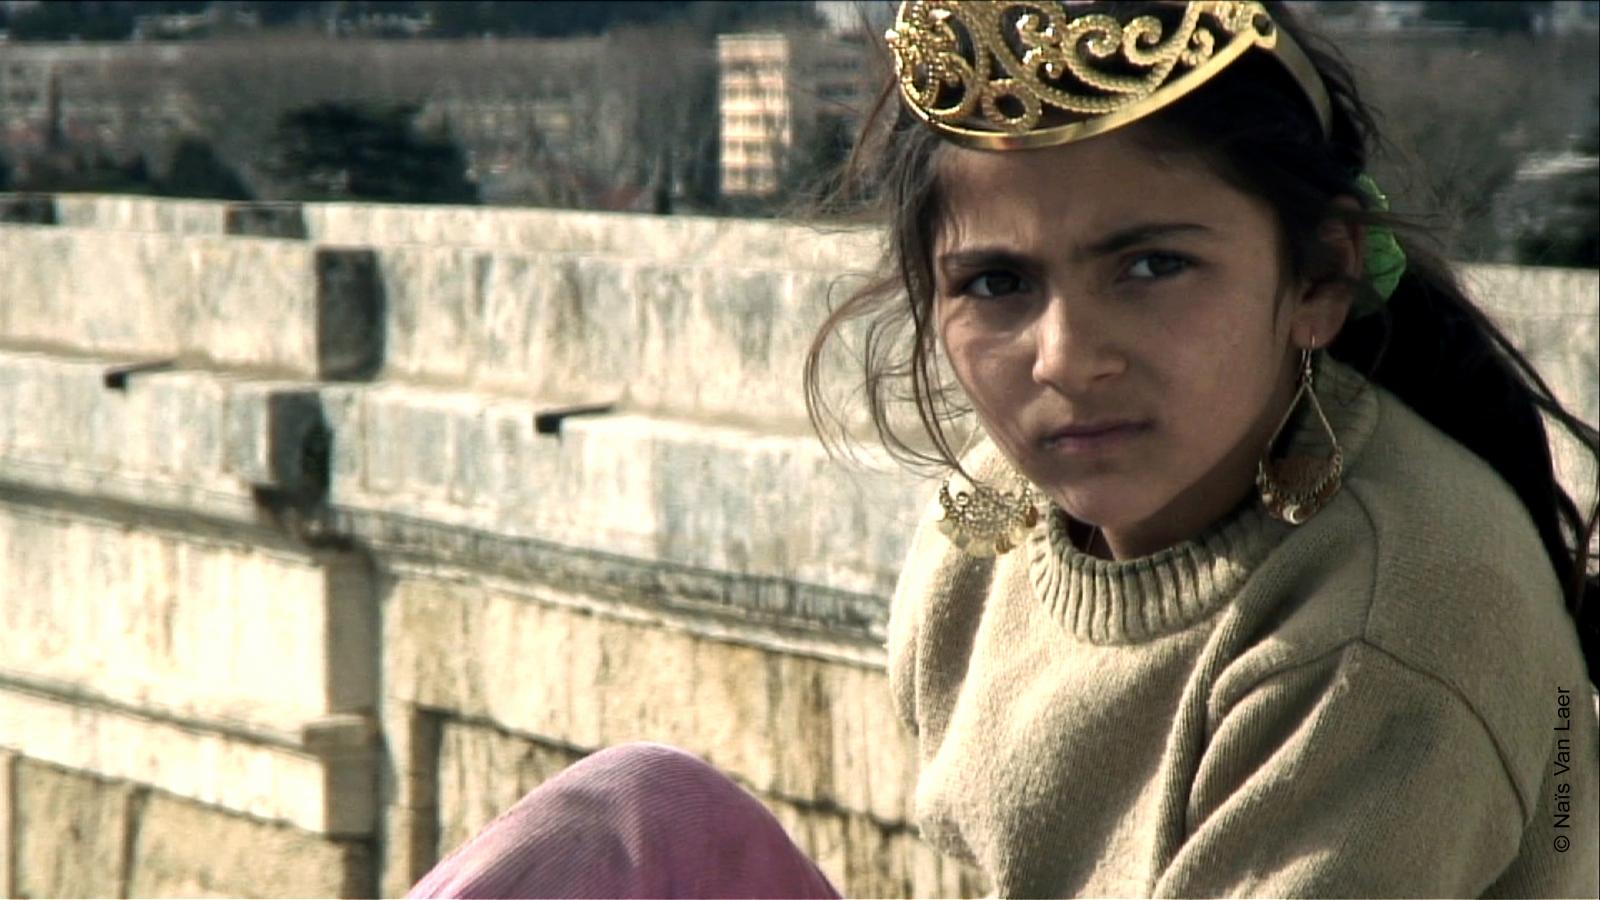 Jeune rom coiffée d'une couronne, adossée contre un mur de pierre